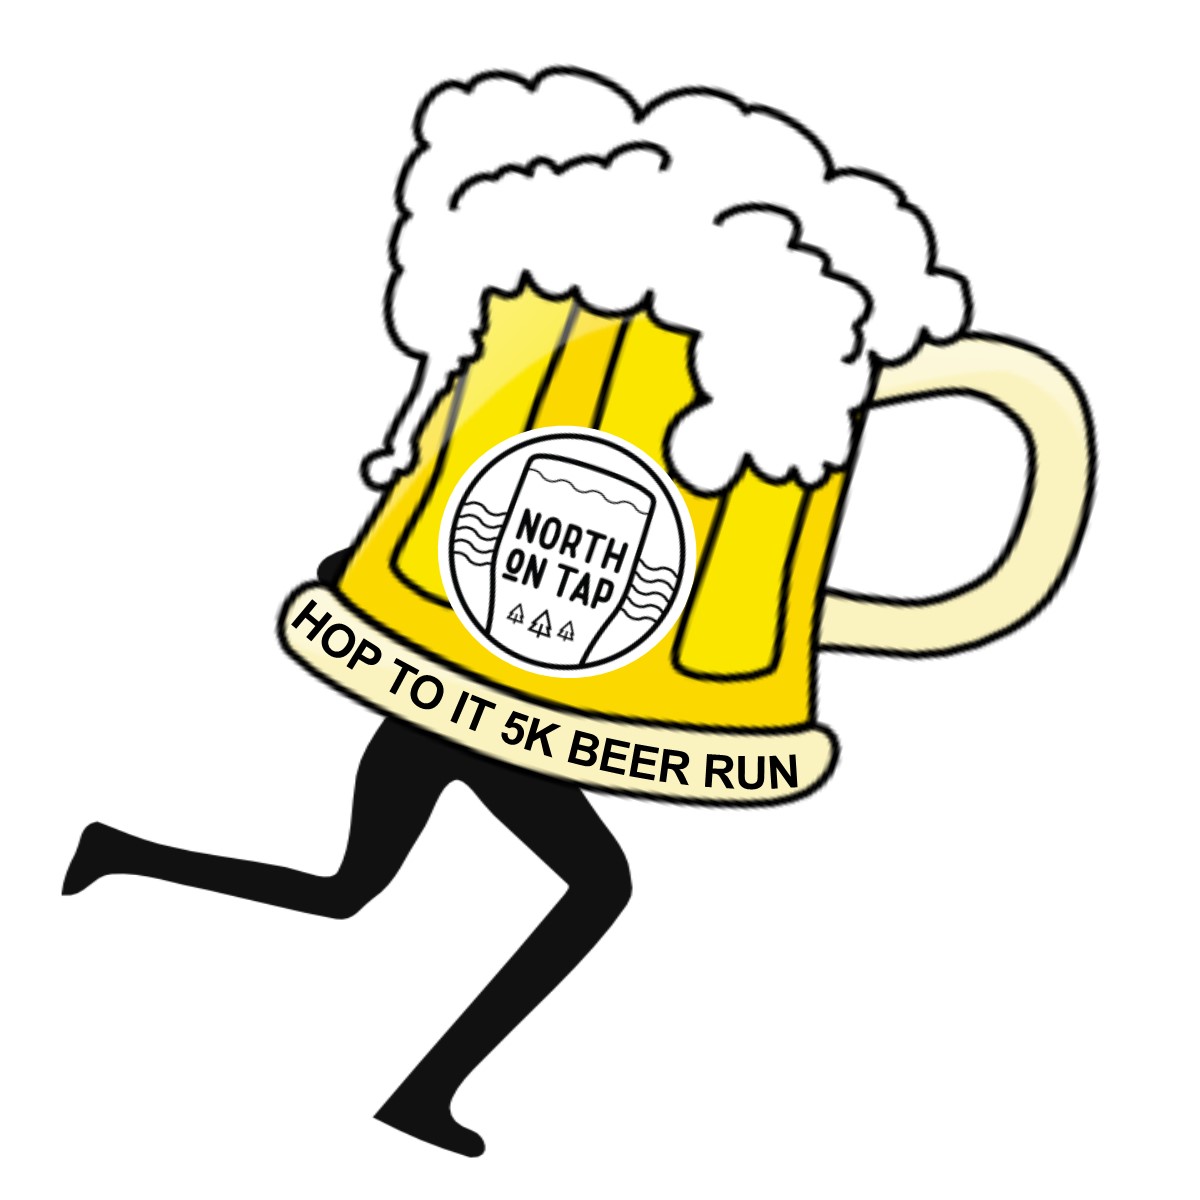 Beer-Run-Hop-To-It-logo